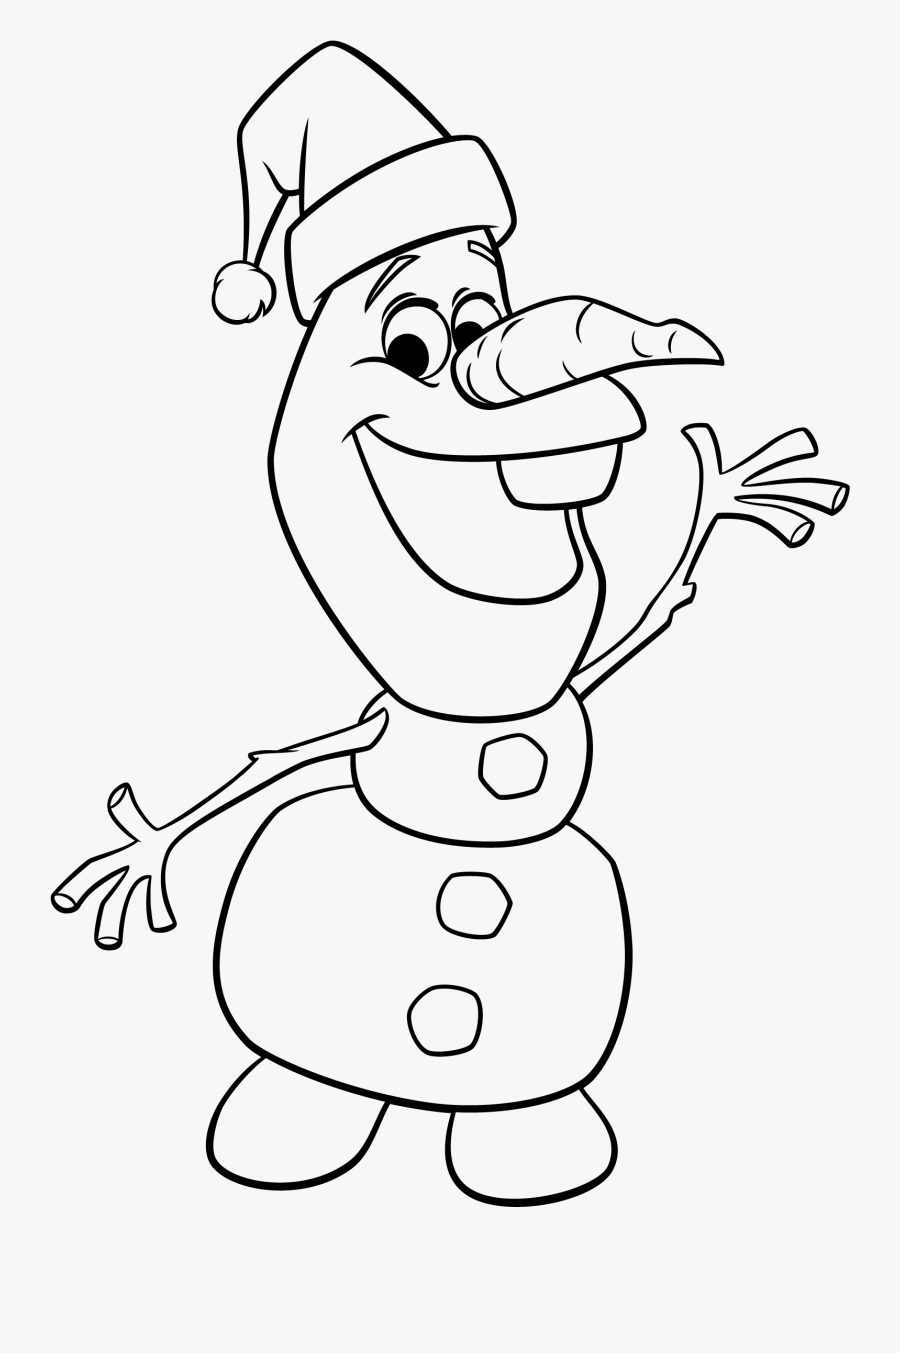 Clip Art Olaf Desenho - Desenhos De Natal Olaf, Transparent Clipart